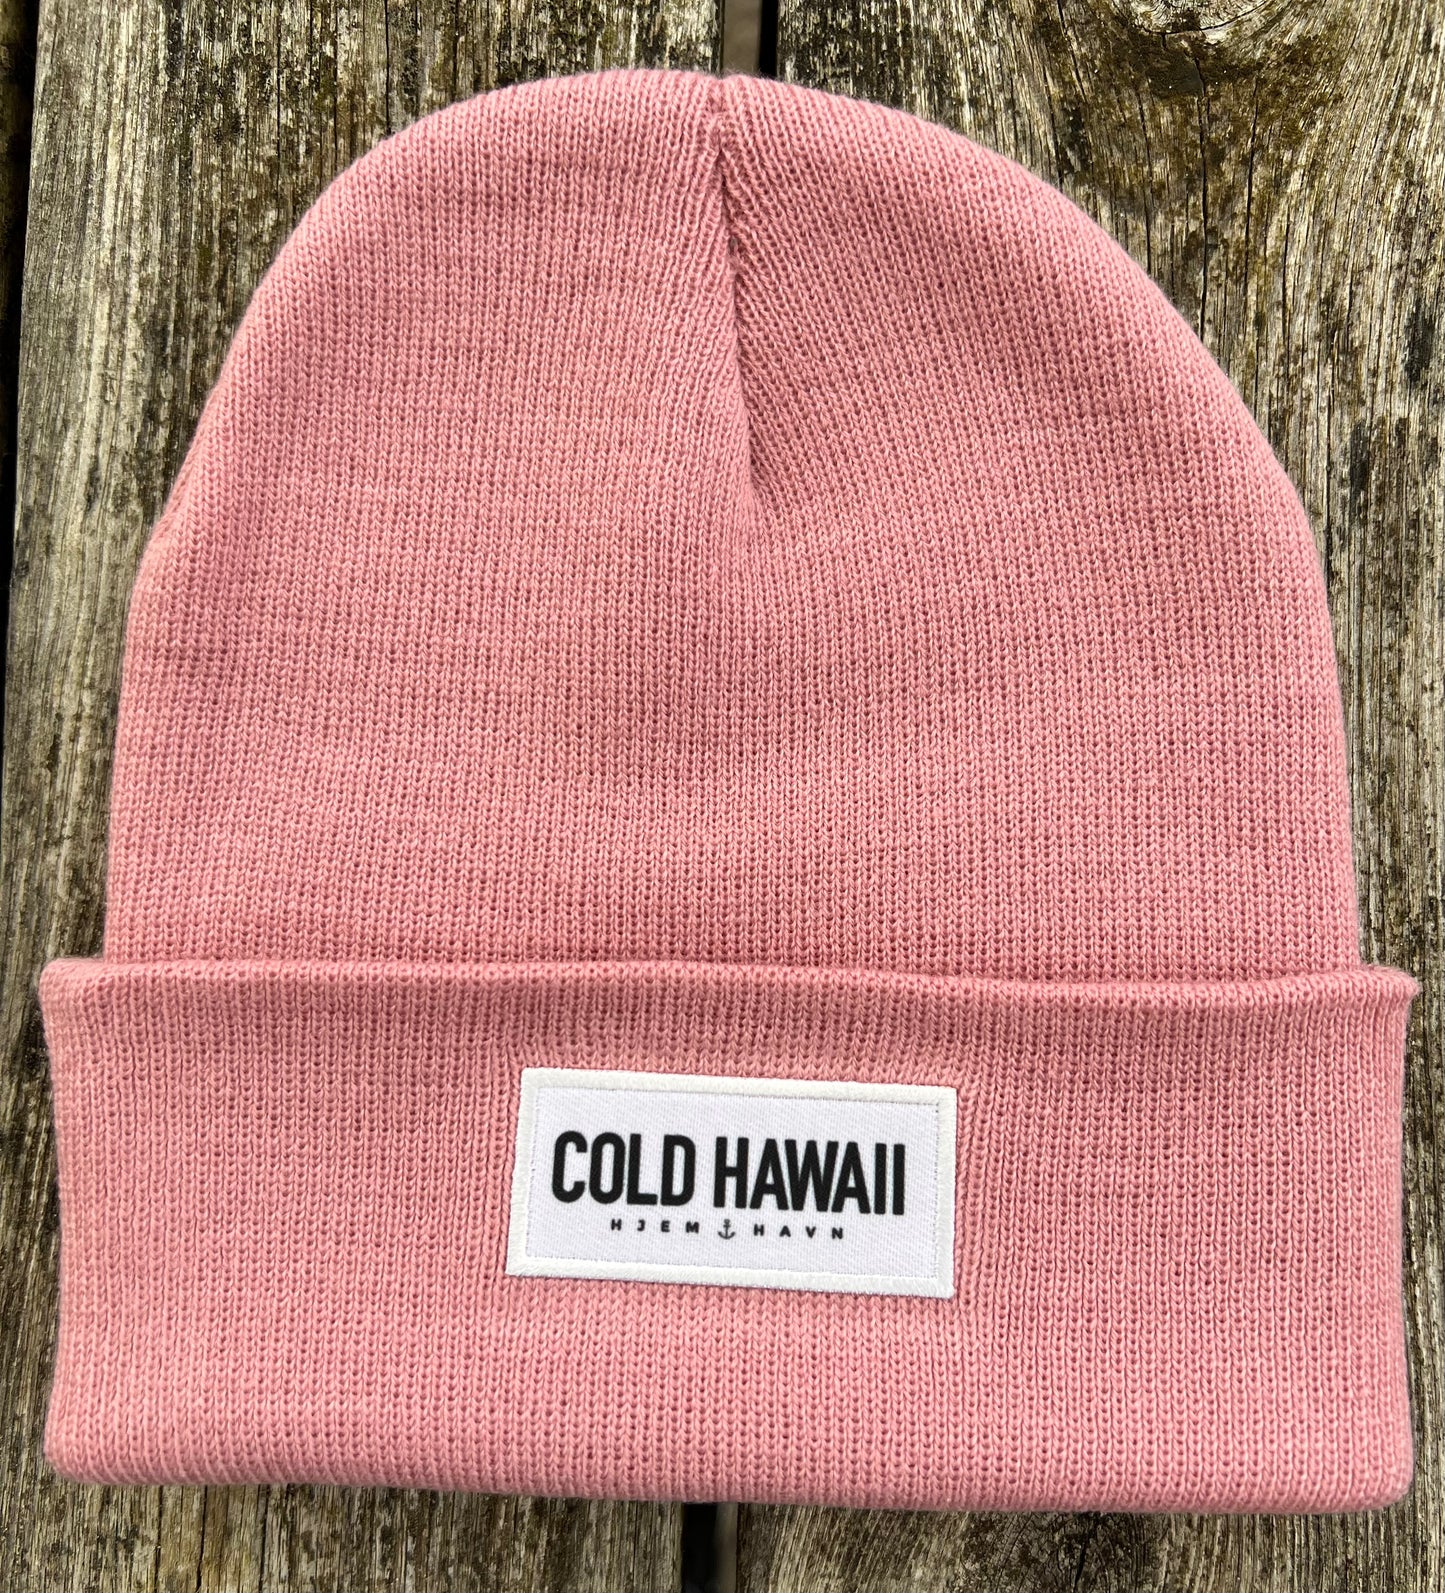 Cold Hawaii hue